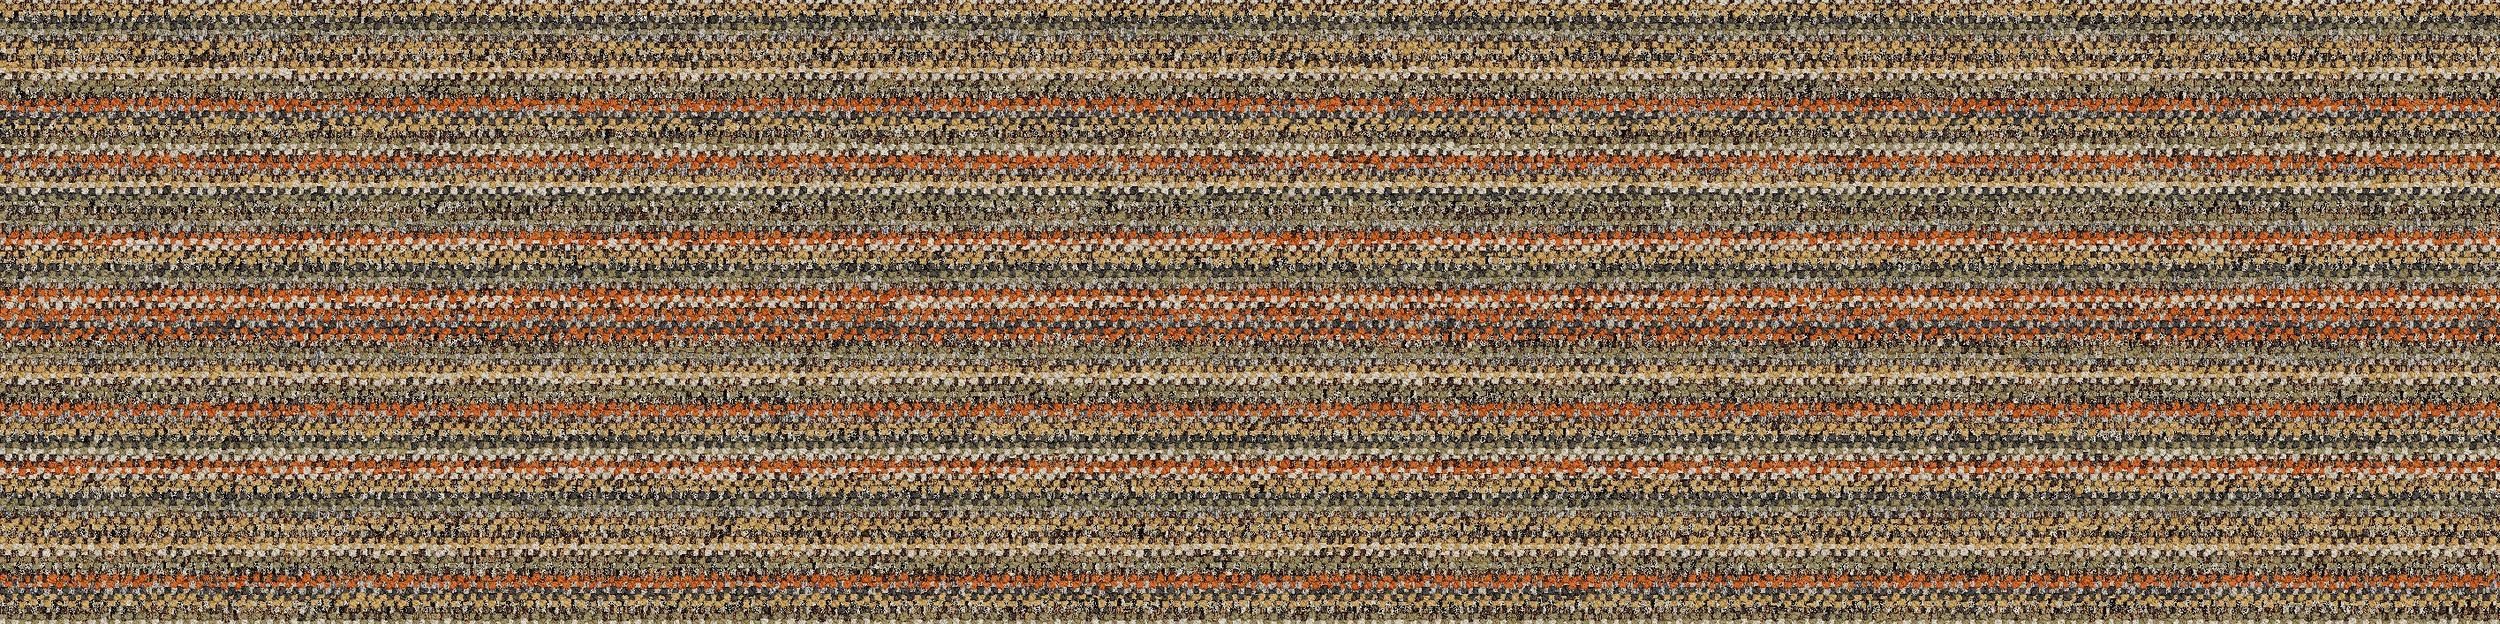 WW865 Carpet Tile In Autumn Warp Bildnummer 2